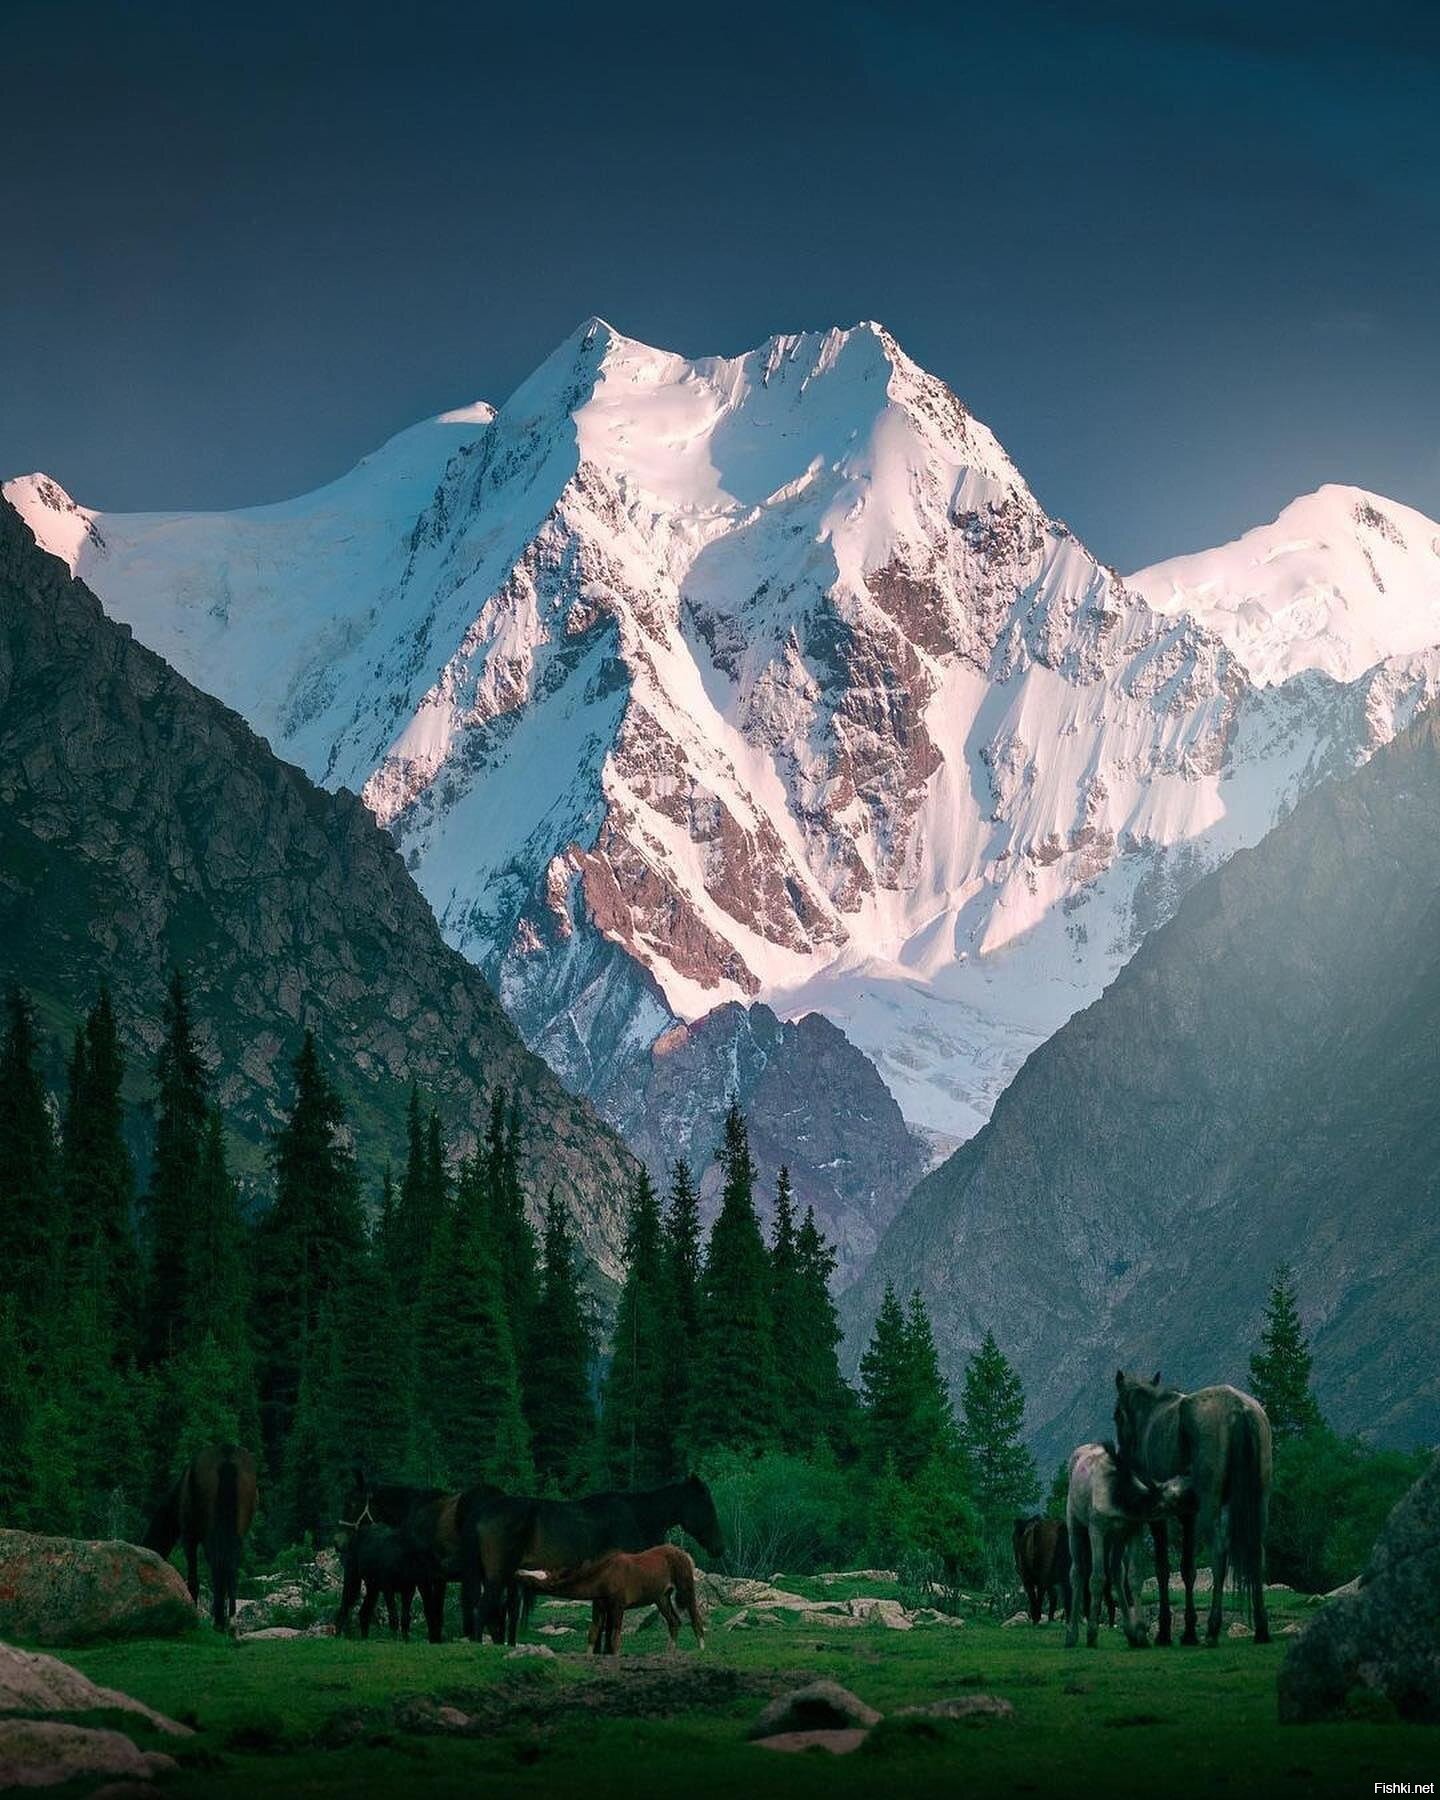 Victory Peak (Kyrgyzstan)